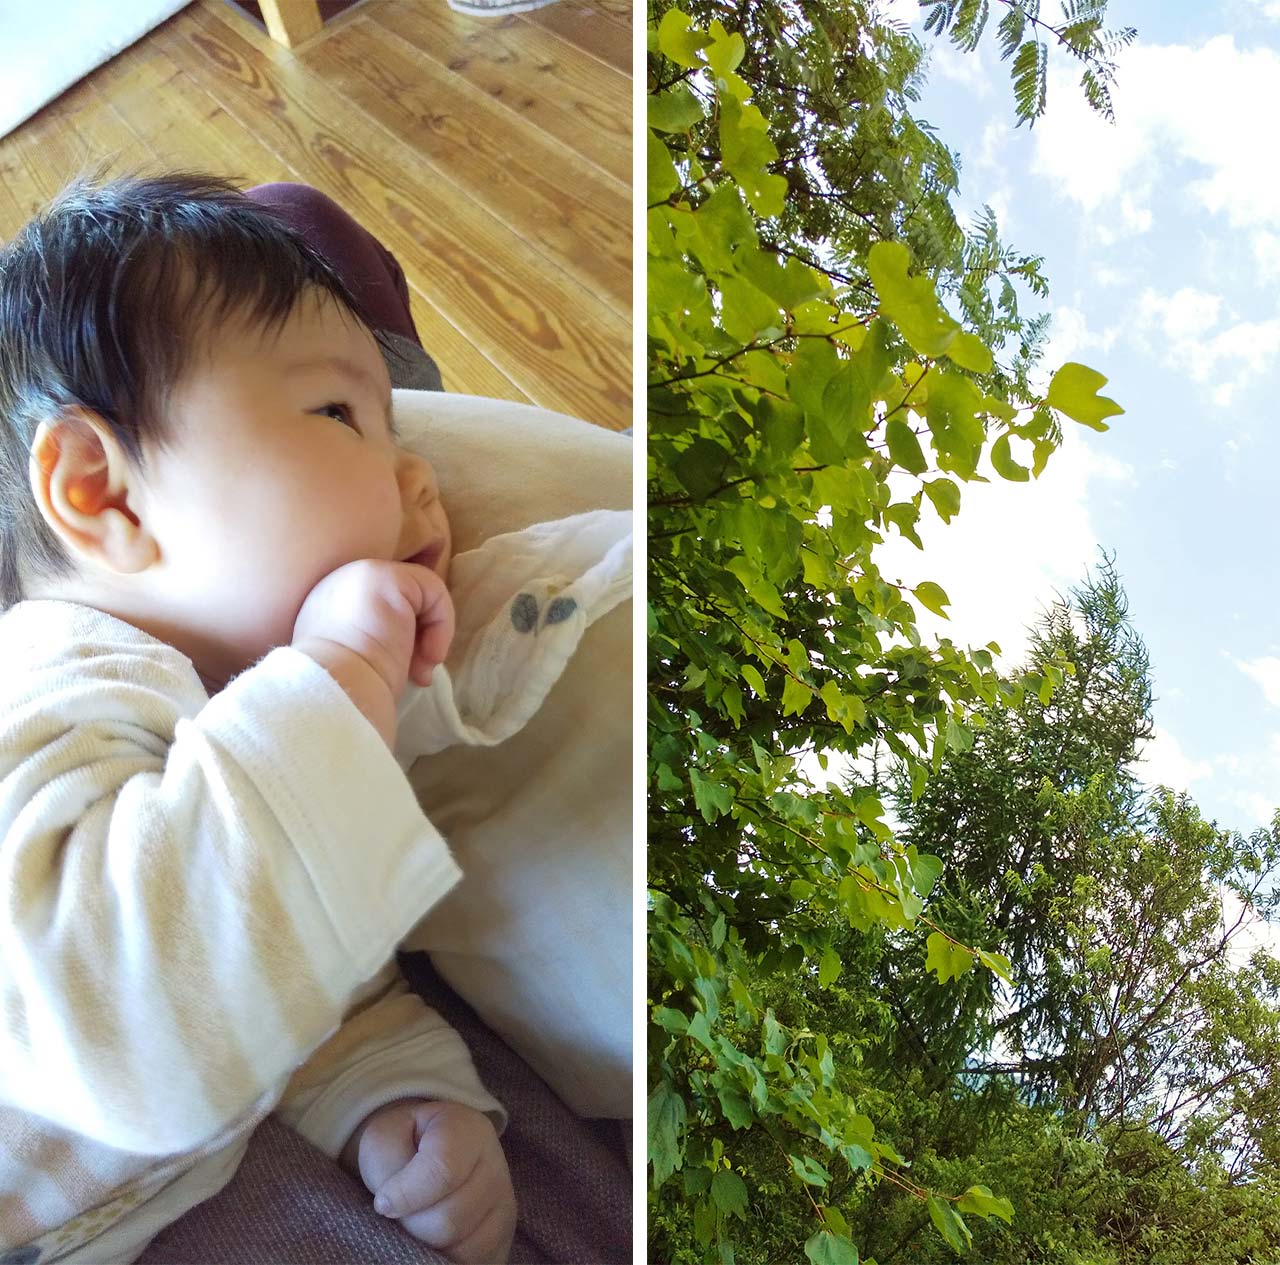 （左）授乳途中に私の膝の上で声をあげながら窓の外をみつめる娘。（右）娘がみあげている窓辺からみえる木々と空。